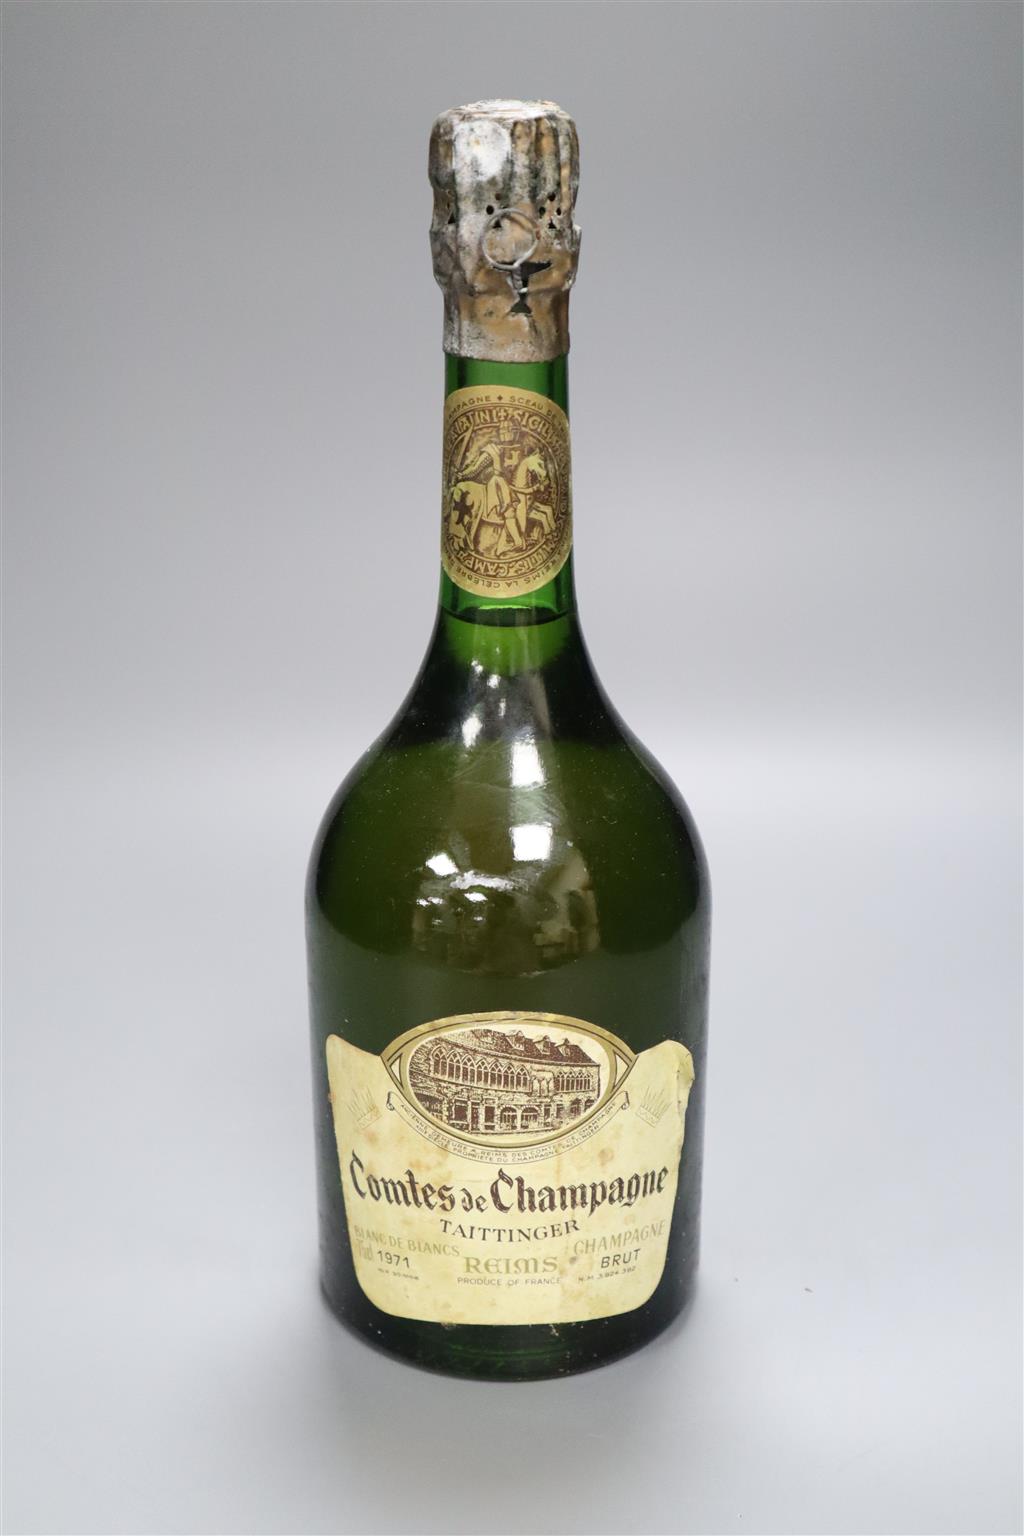 One bottle of Taittinger Comtes de Champagne, 1971.